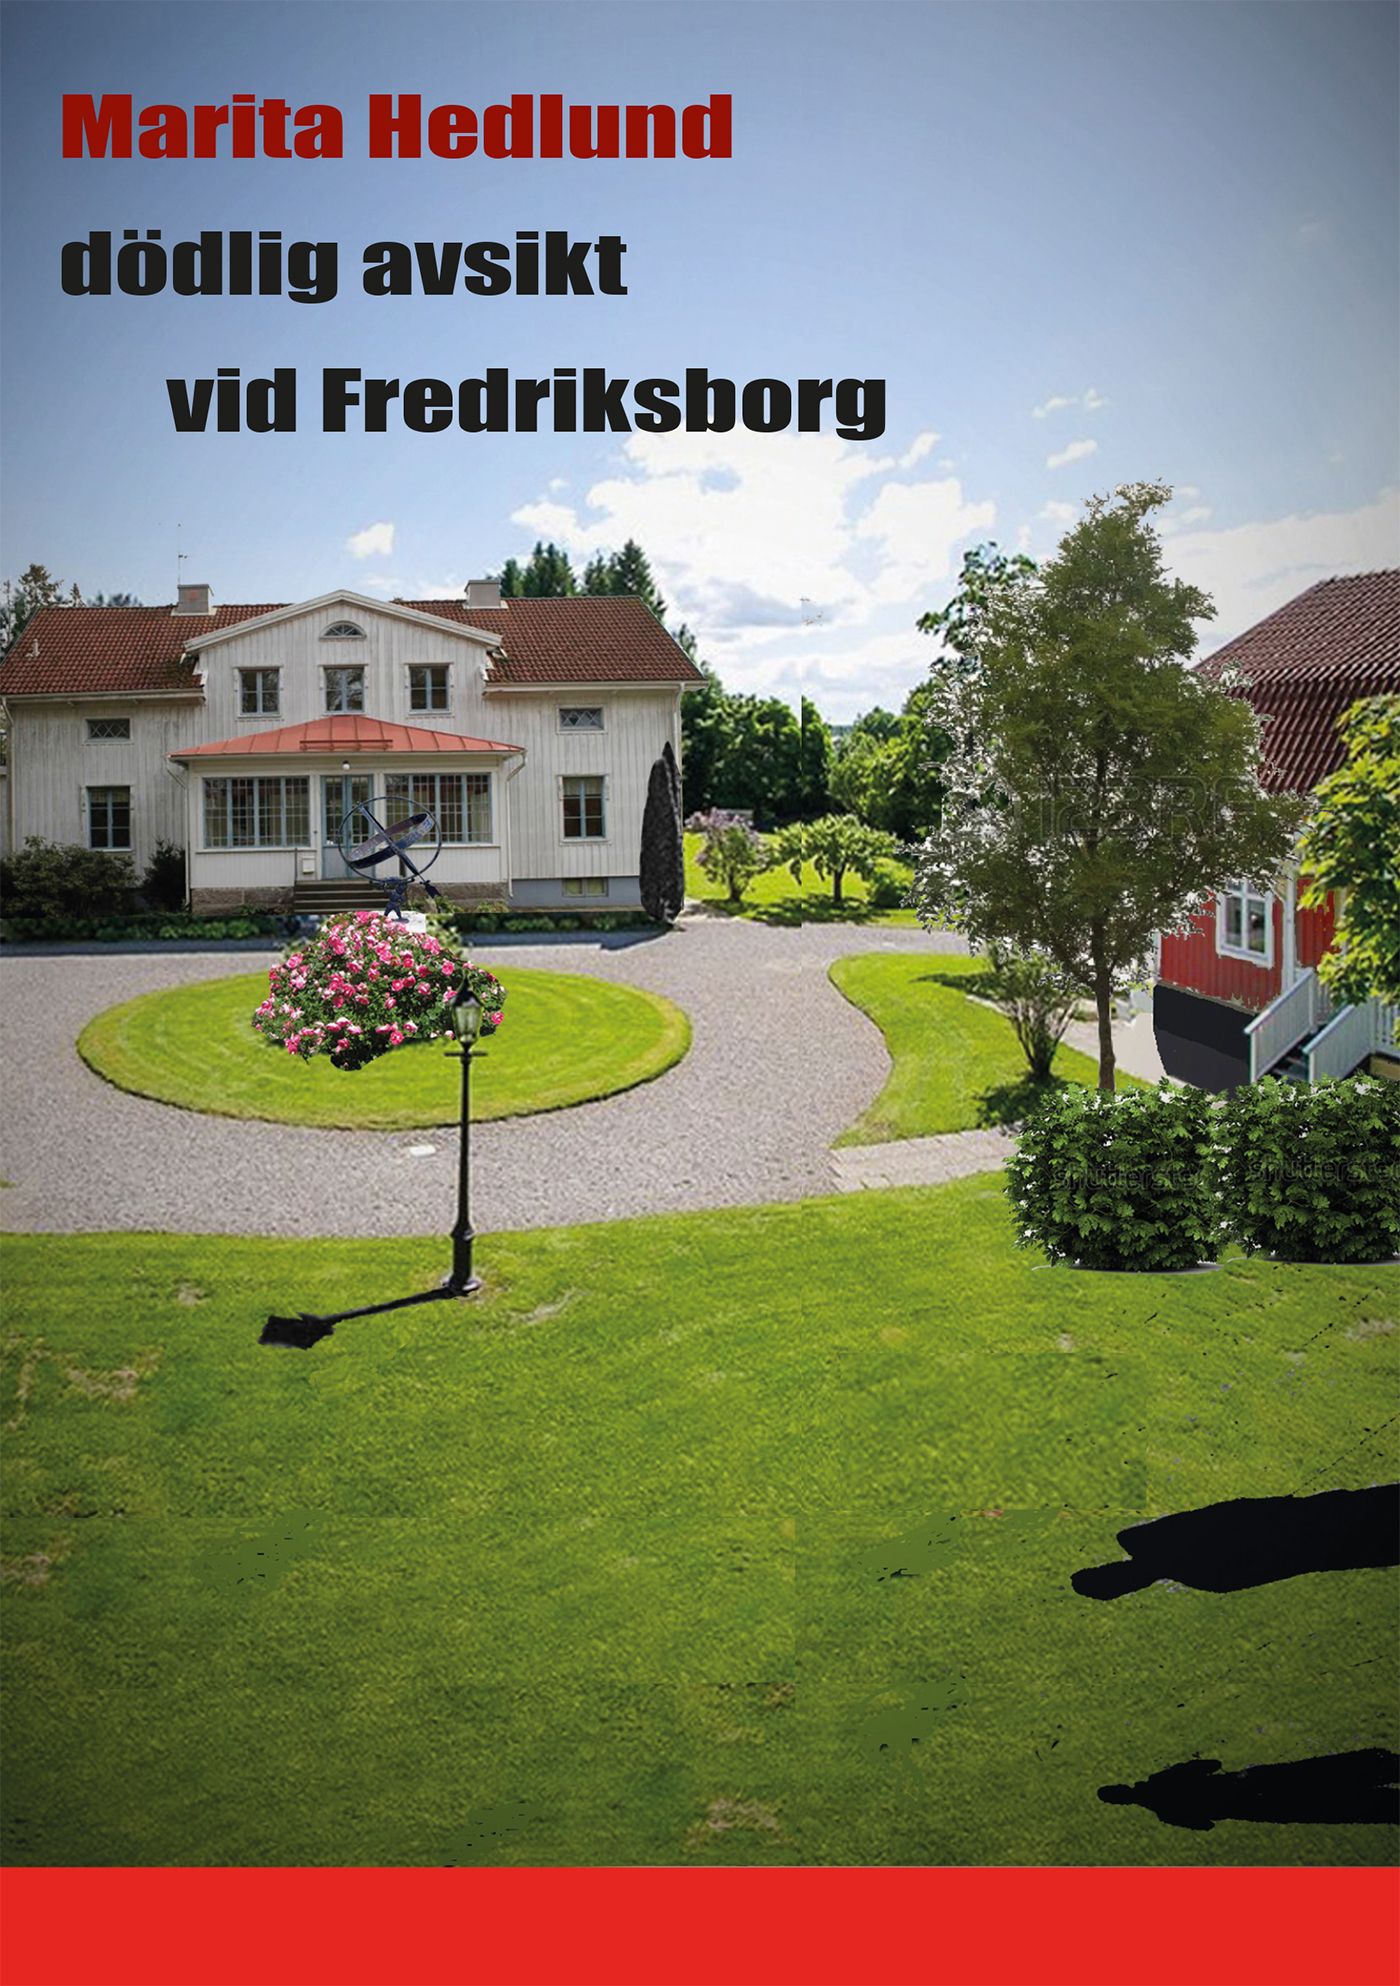 dödlig avsikt vid Fredriksborg, eBook by Marita Hedlund